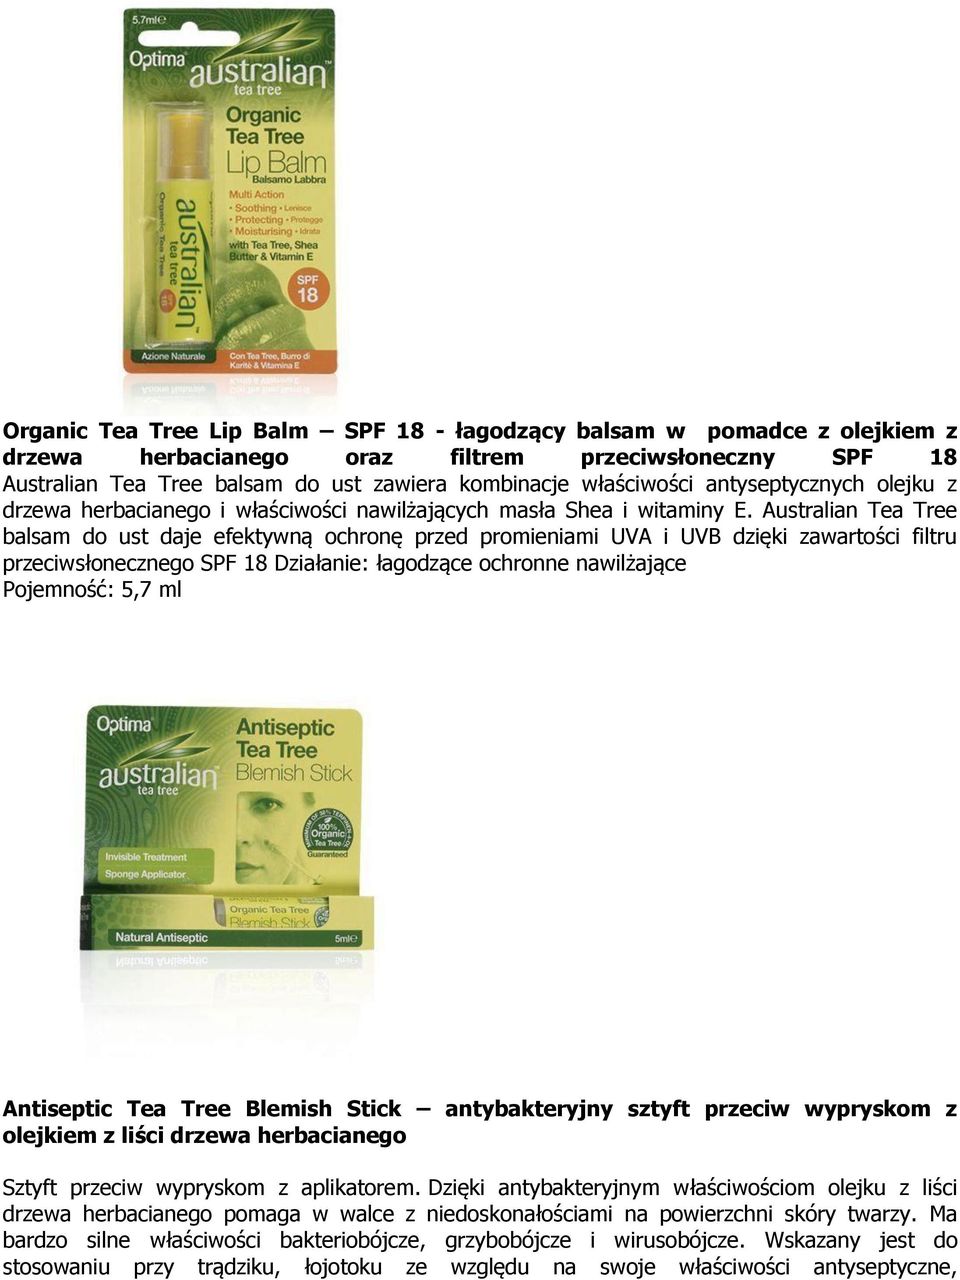 Australian Tea Tree balsam do ust daje efektywną ochronę przed promieniami UVA i UVB dzięki zawartości filtru przeciwsłonecznego SPF 18 Działanie: łagodzące ochronne nawilżające Pojemność: 5,7 ml